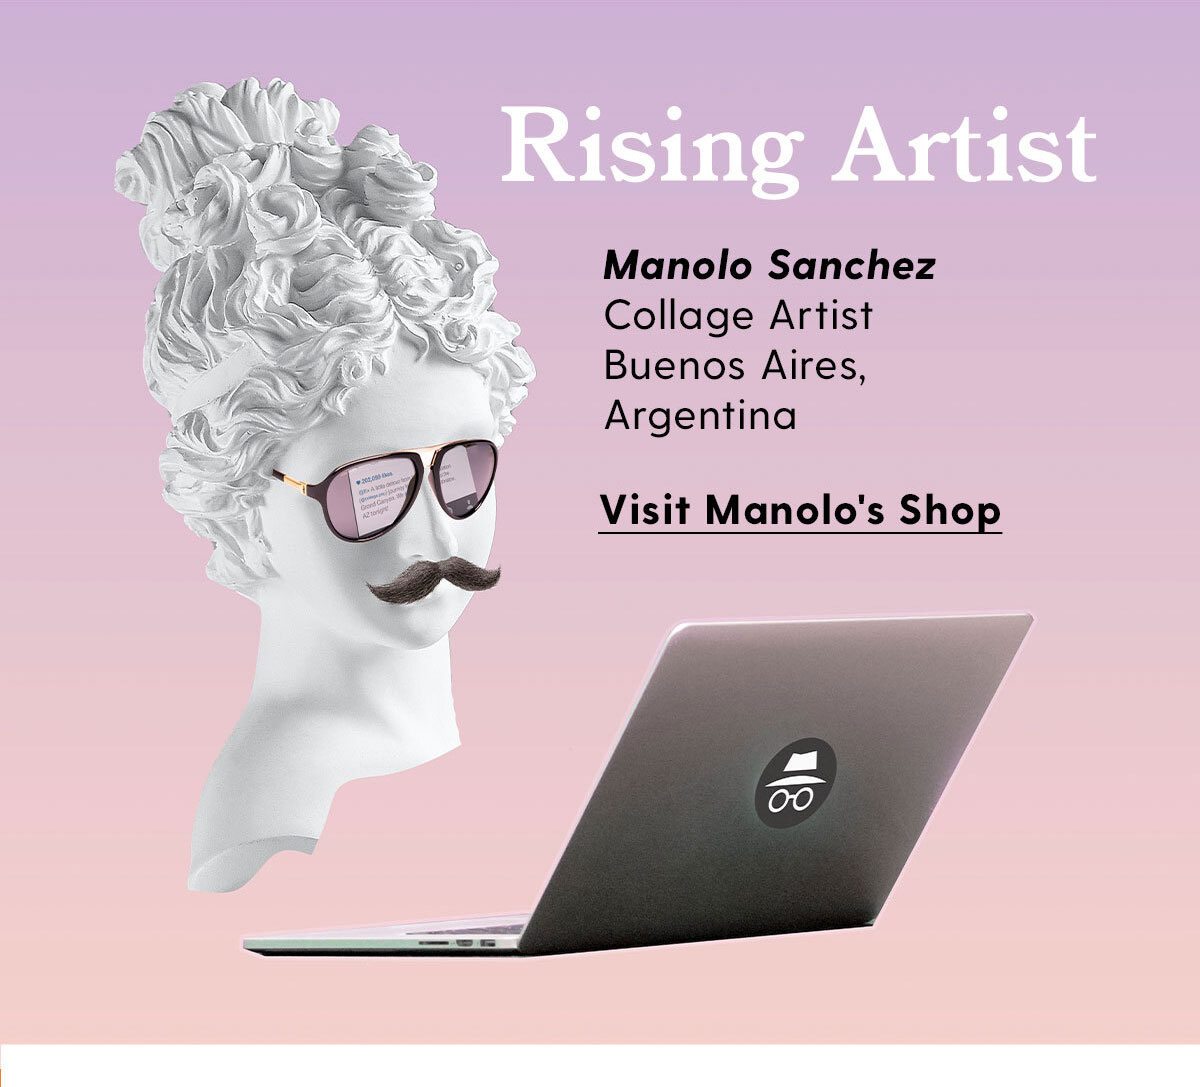 Rising Artist: Manolo Sanchez - Collage Artist | Buenos Aires, Argentina. Visit Manolo's Shop